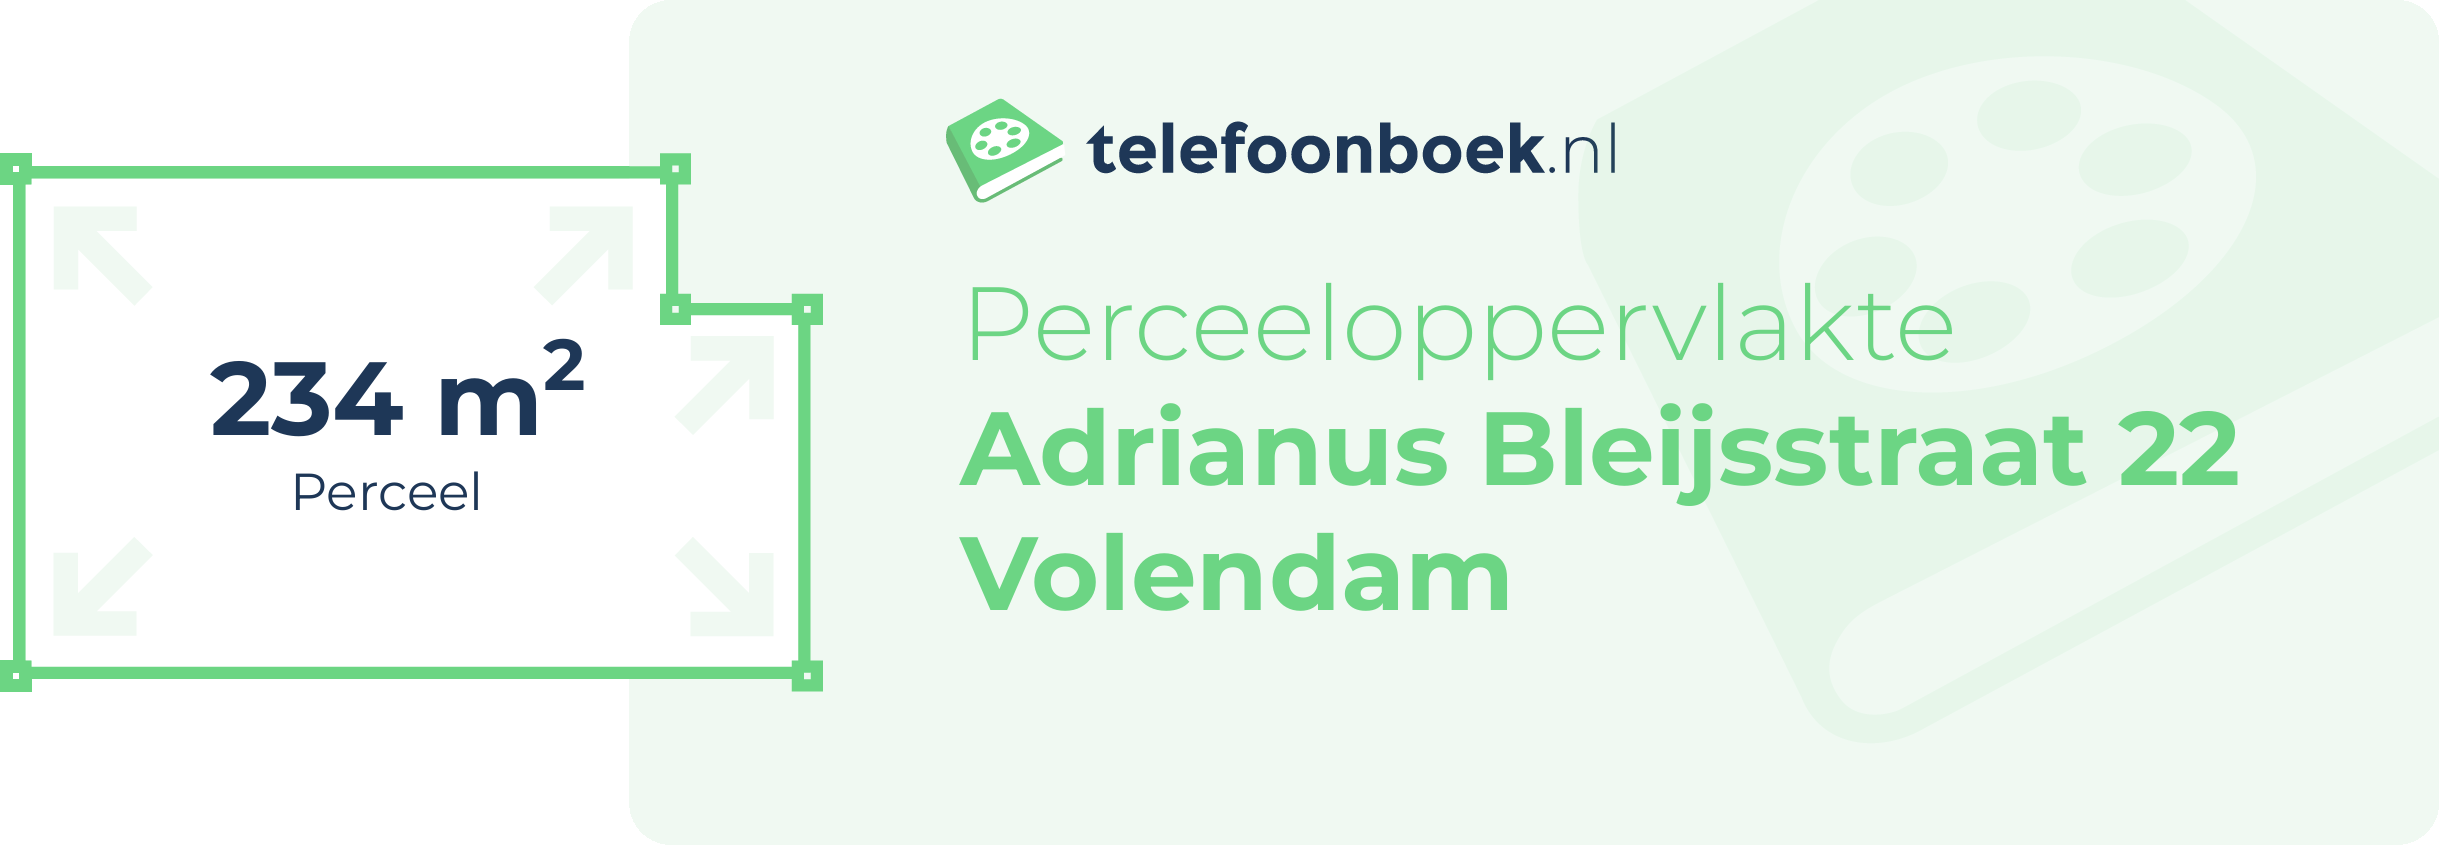 Perceeloppervlakte Adrianus Bleijsstraat 22 Volendam